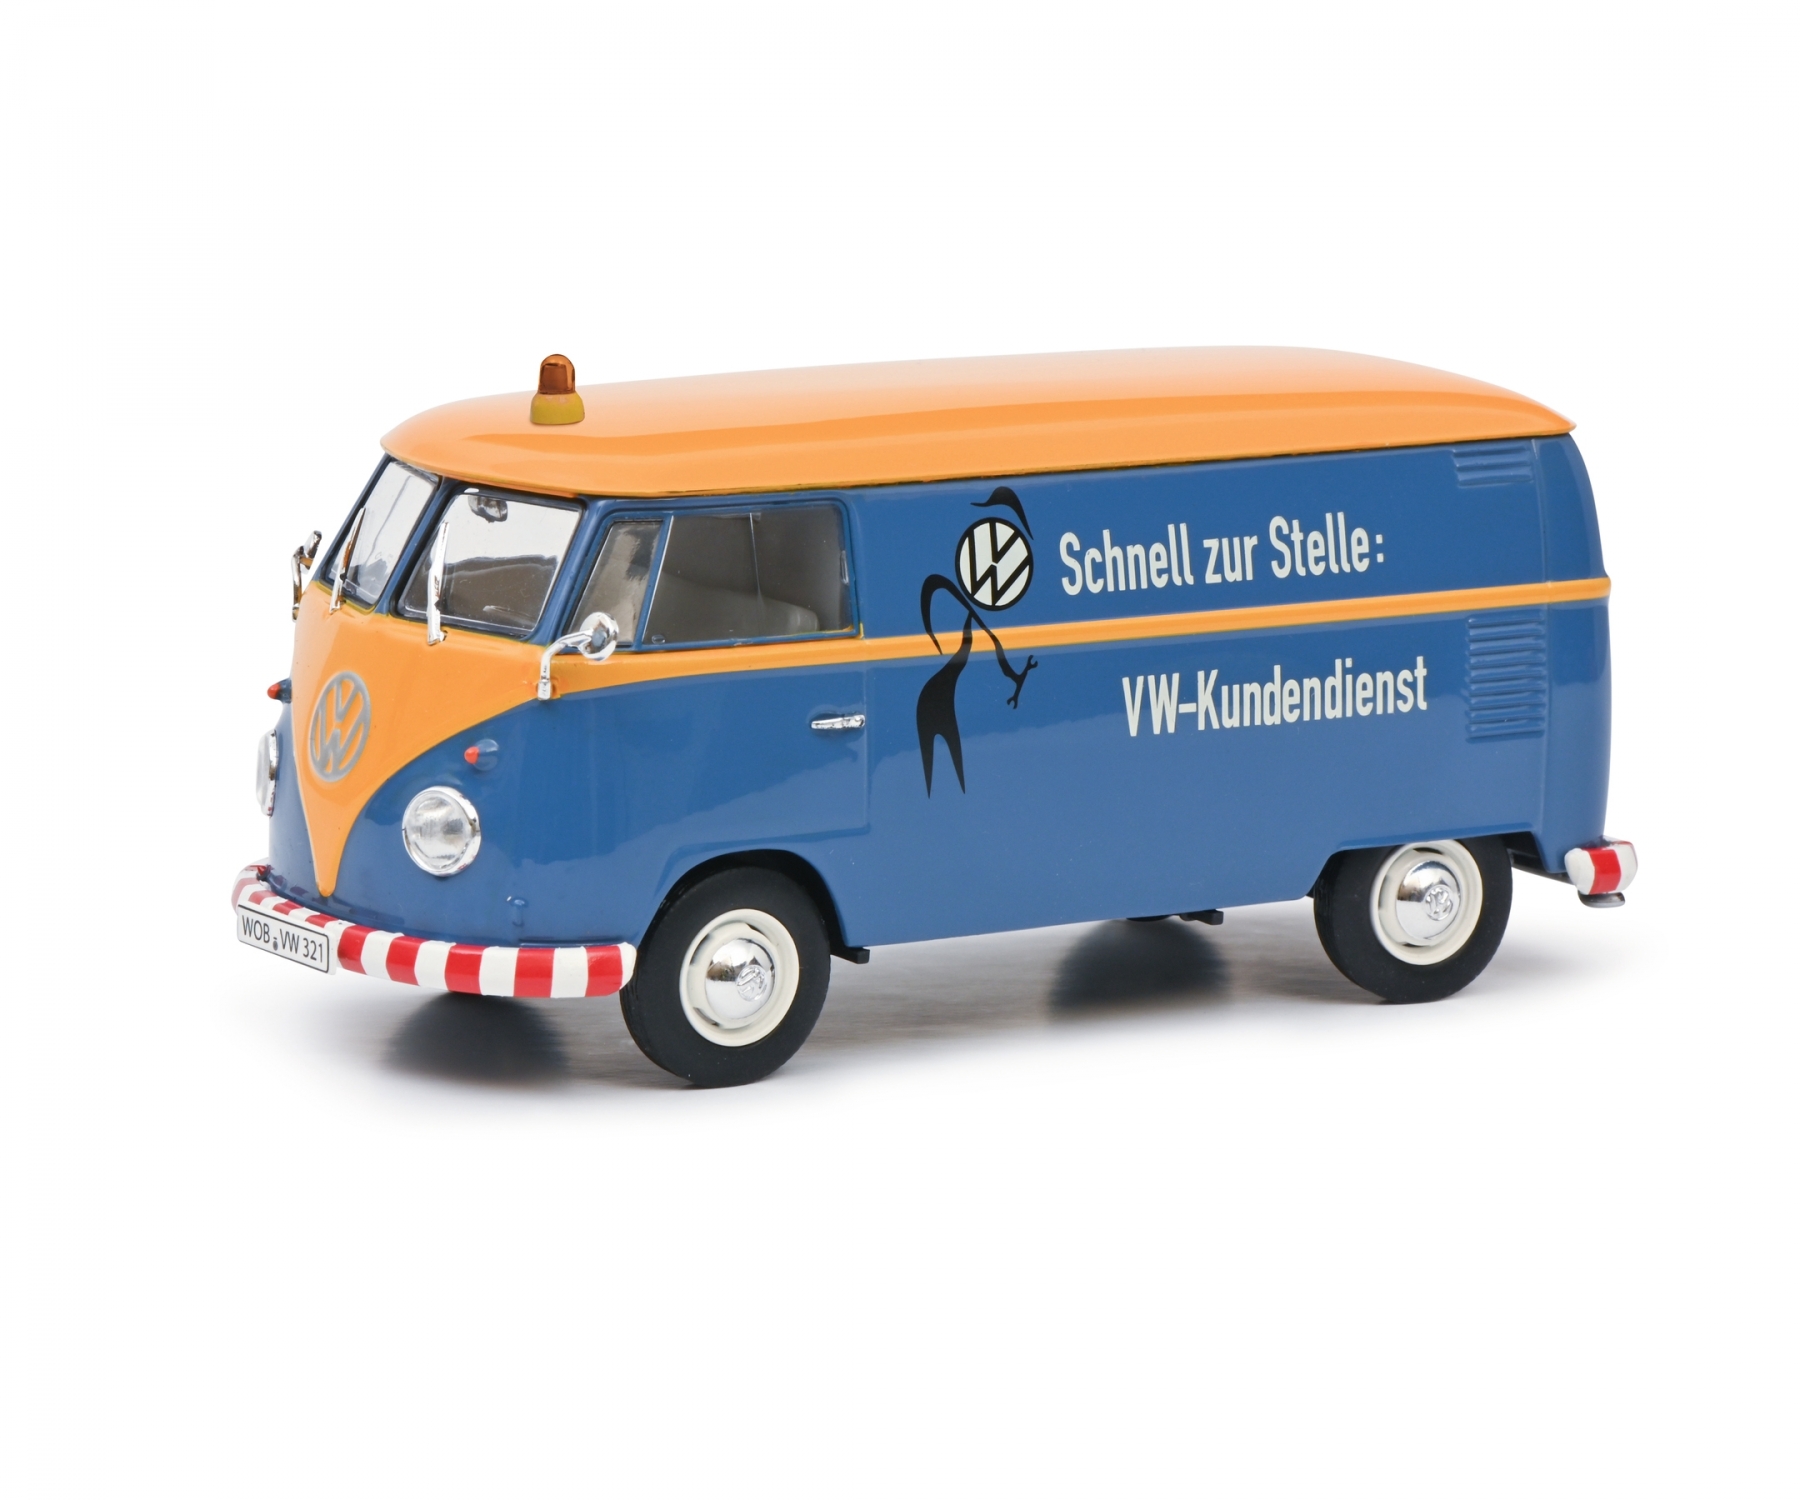 schuco-450785500-1-Volkswagen-VW-T1b-Lieferwagen-Kastenwagen-Schnell-zur-Stelle-VW-Kundendienst-blau-gelb